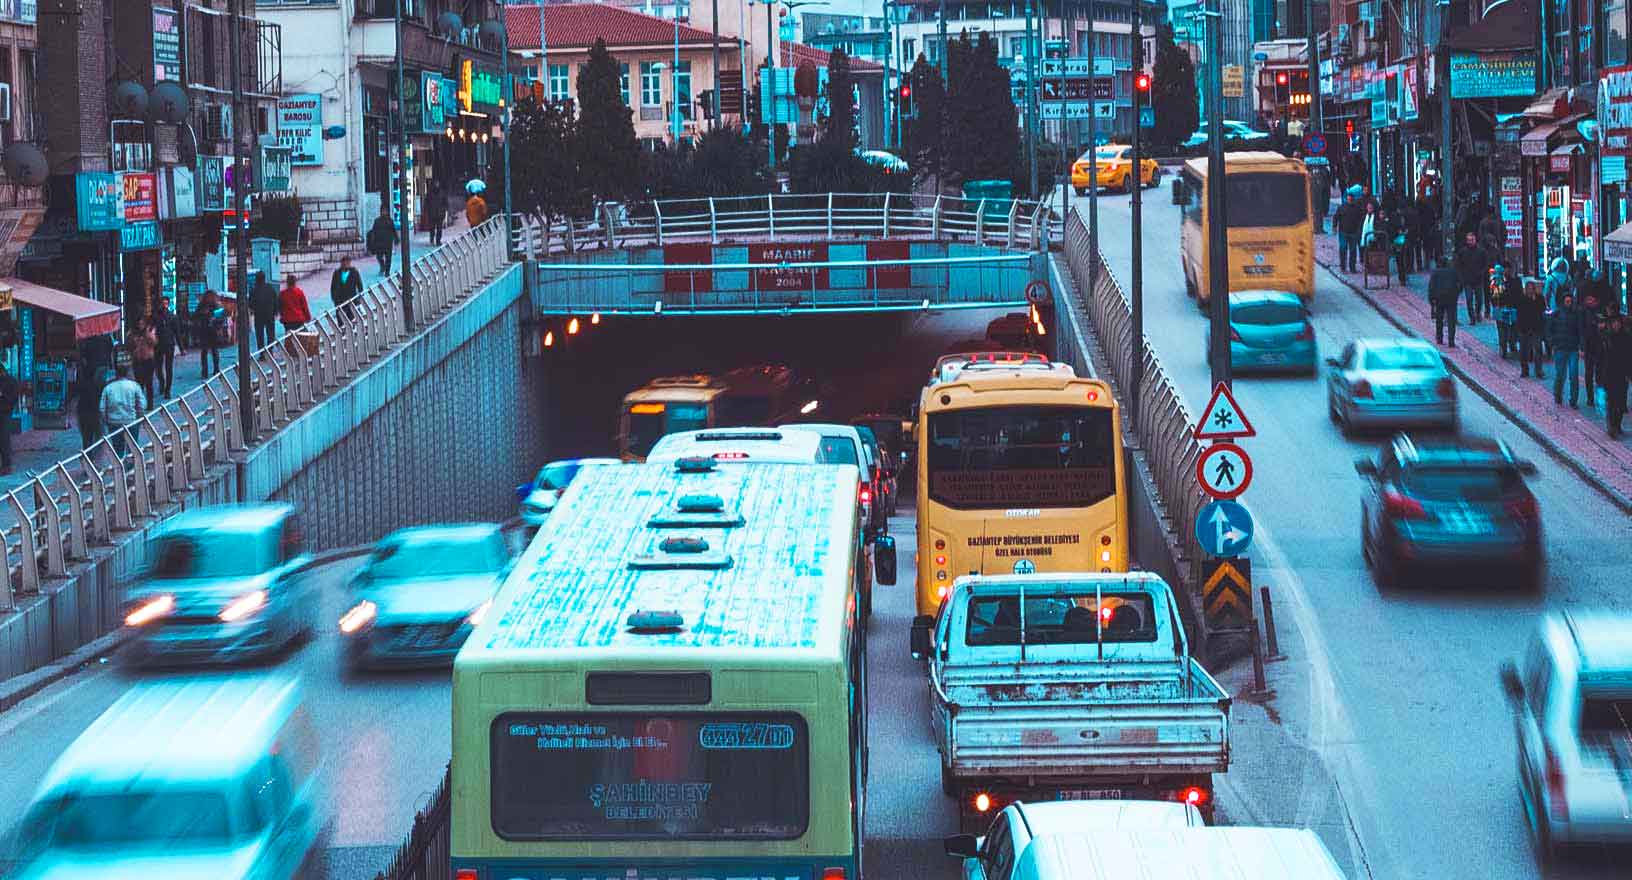 Congestionamento de tráfego no centro de uma cidade